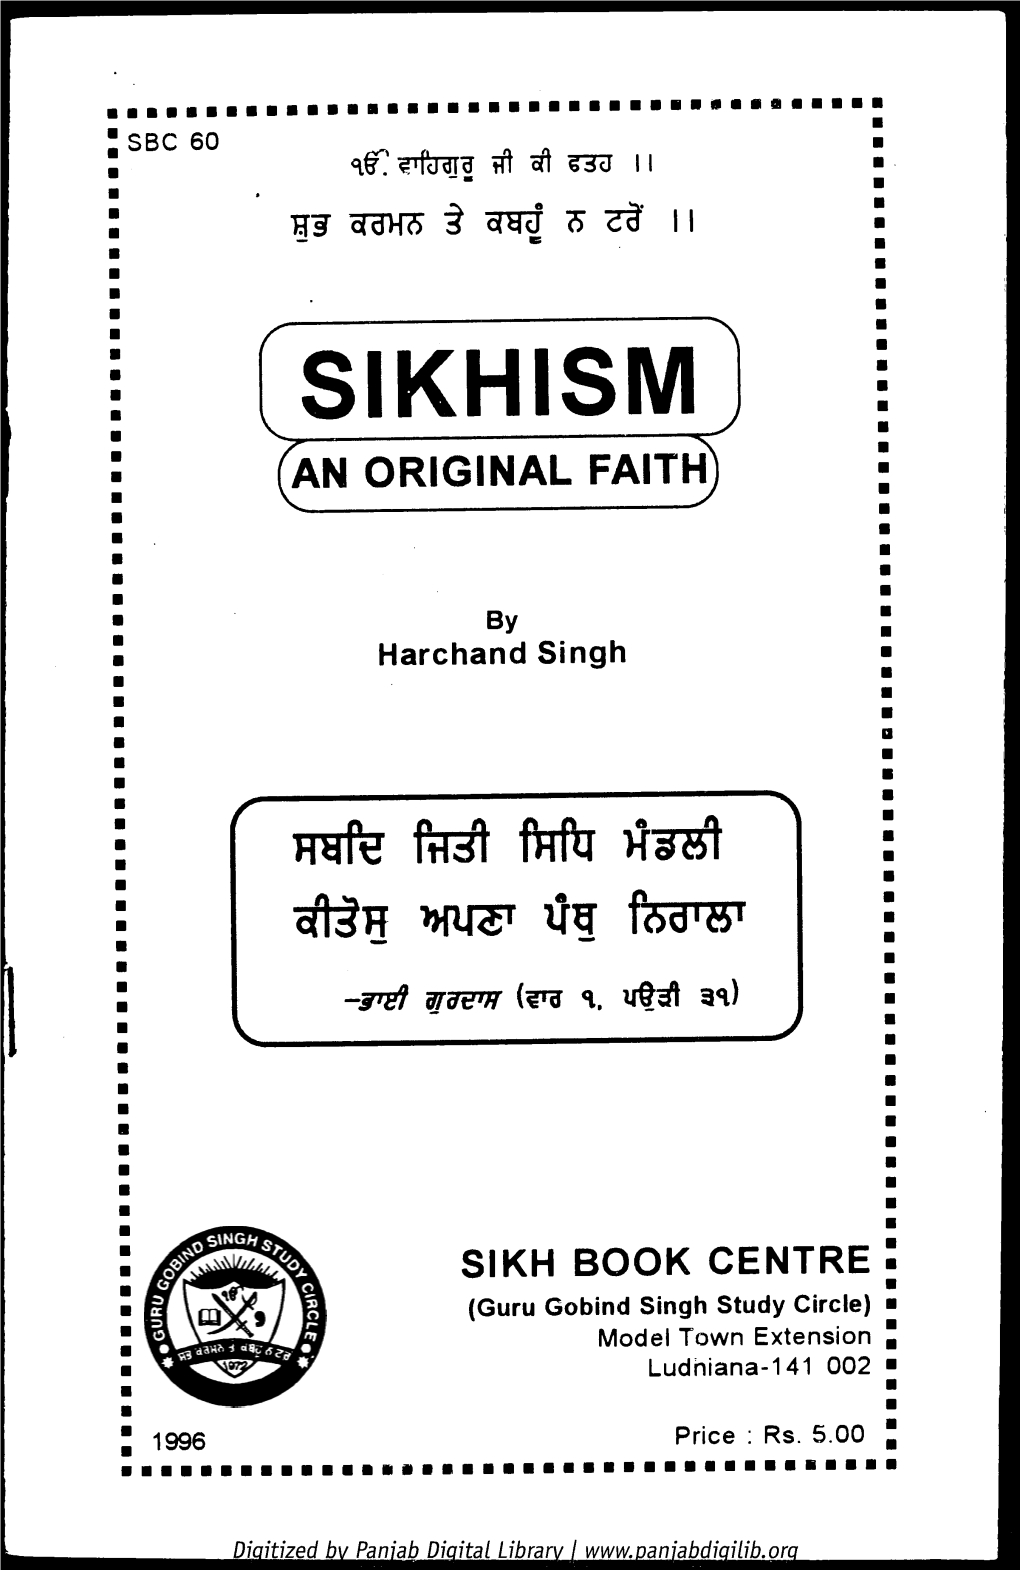 Sikhism] an Original Faith)